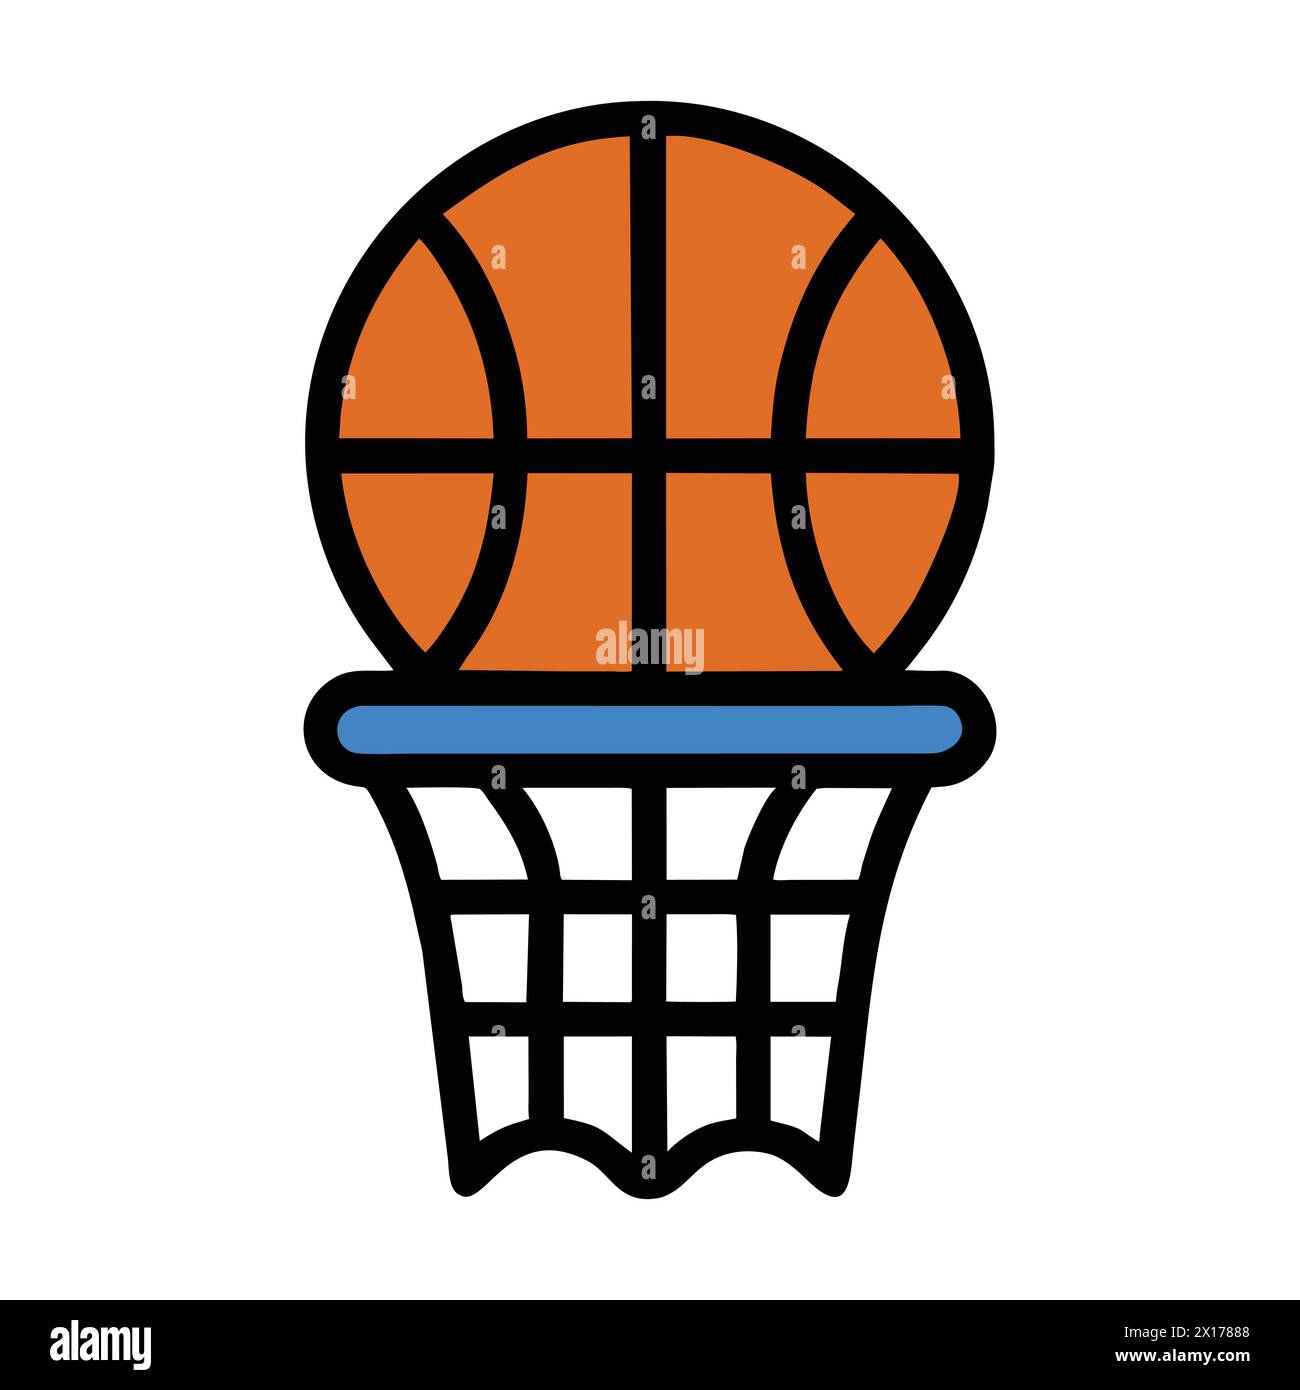 Icona tablero de basketbol - "icona campo da pallacanestro - Design isolato ideale per progetti e grafica sportiva" Illustrazione Vettoriale